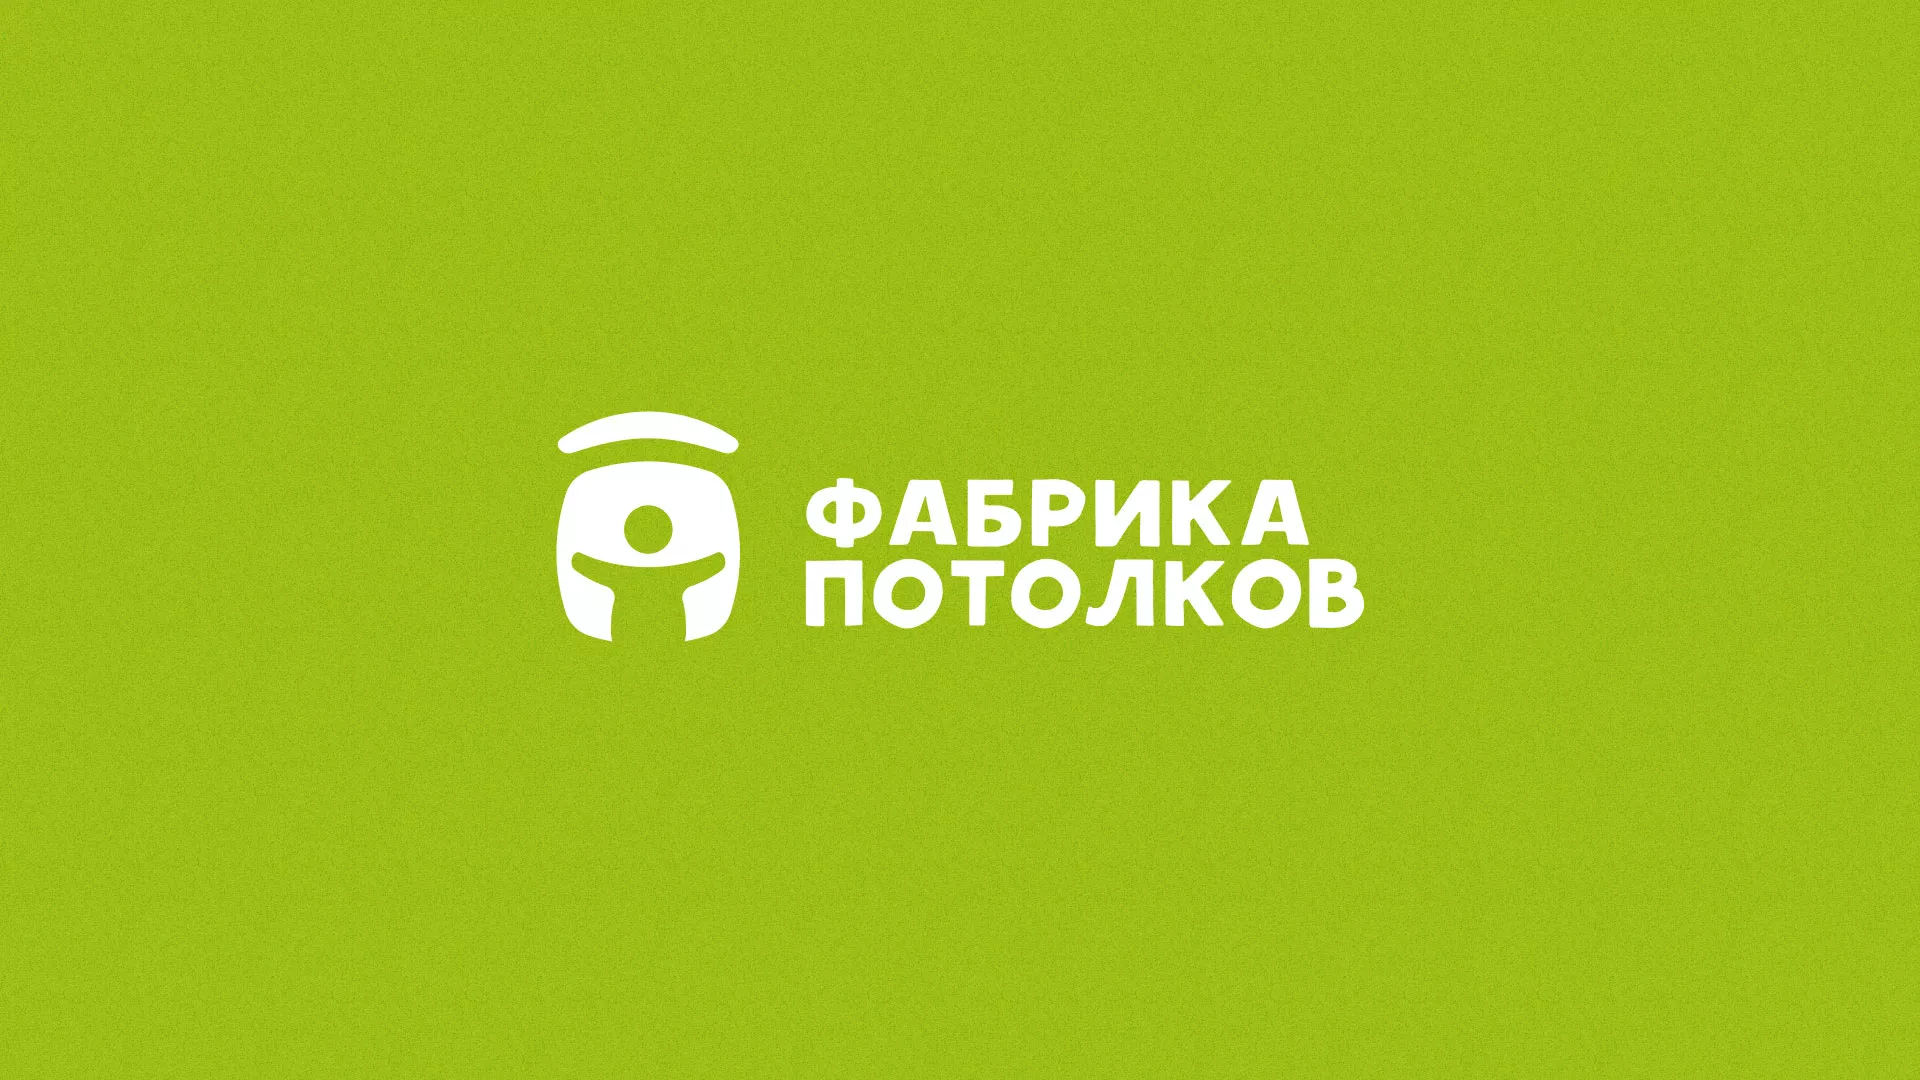 Разработка логотипа для производства натяжных потолков в Воронеже